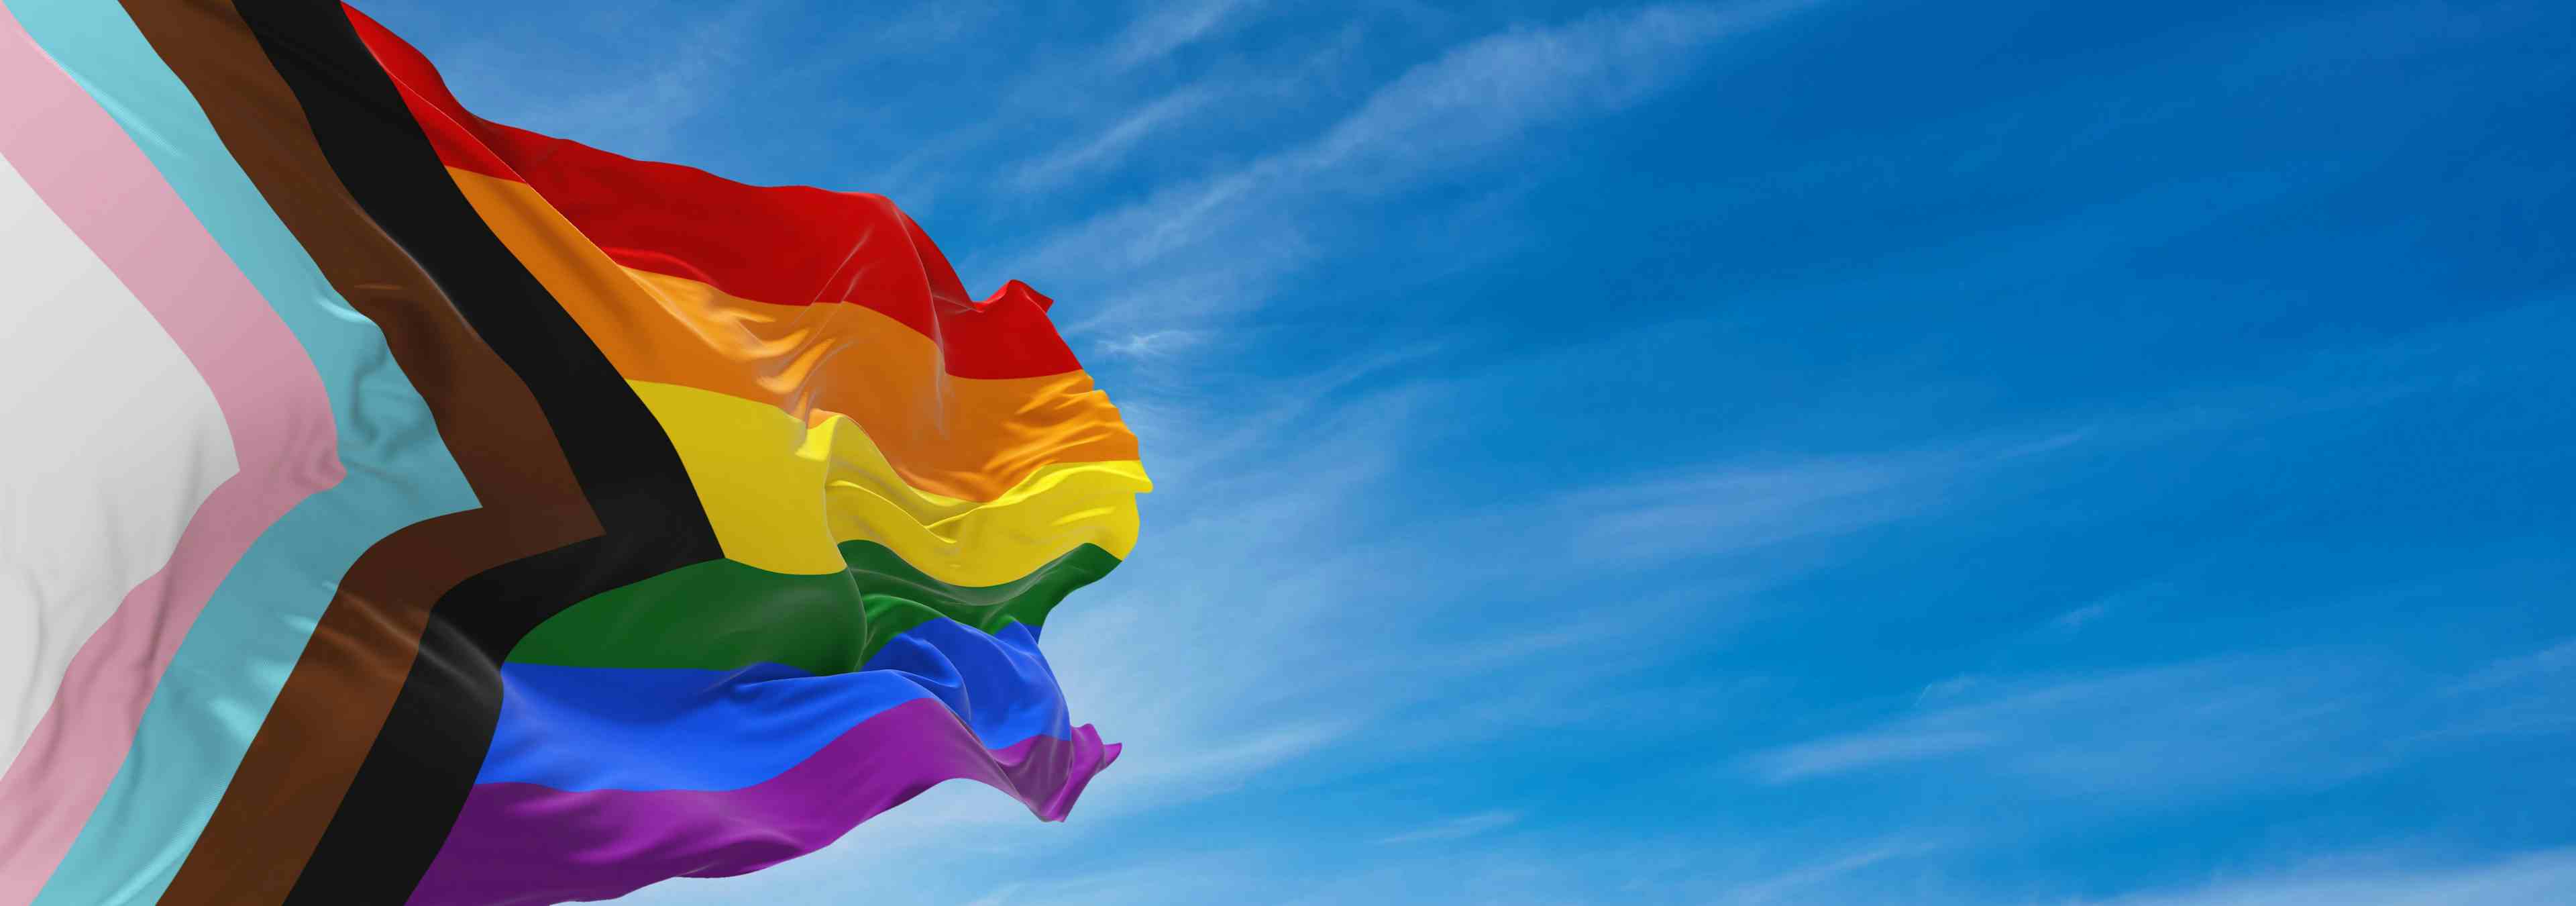 LGBTQ Flag | Image credit: Maxim - stock.adobe.com